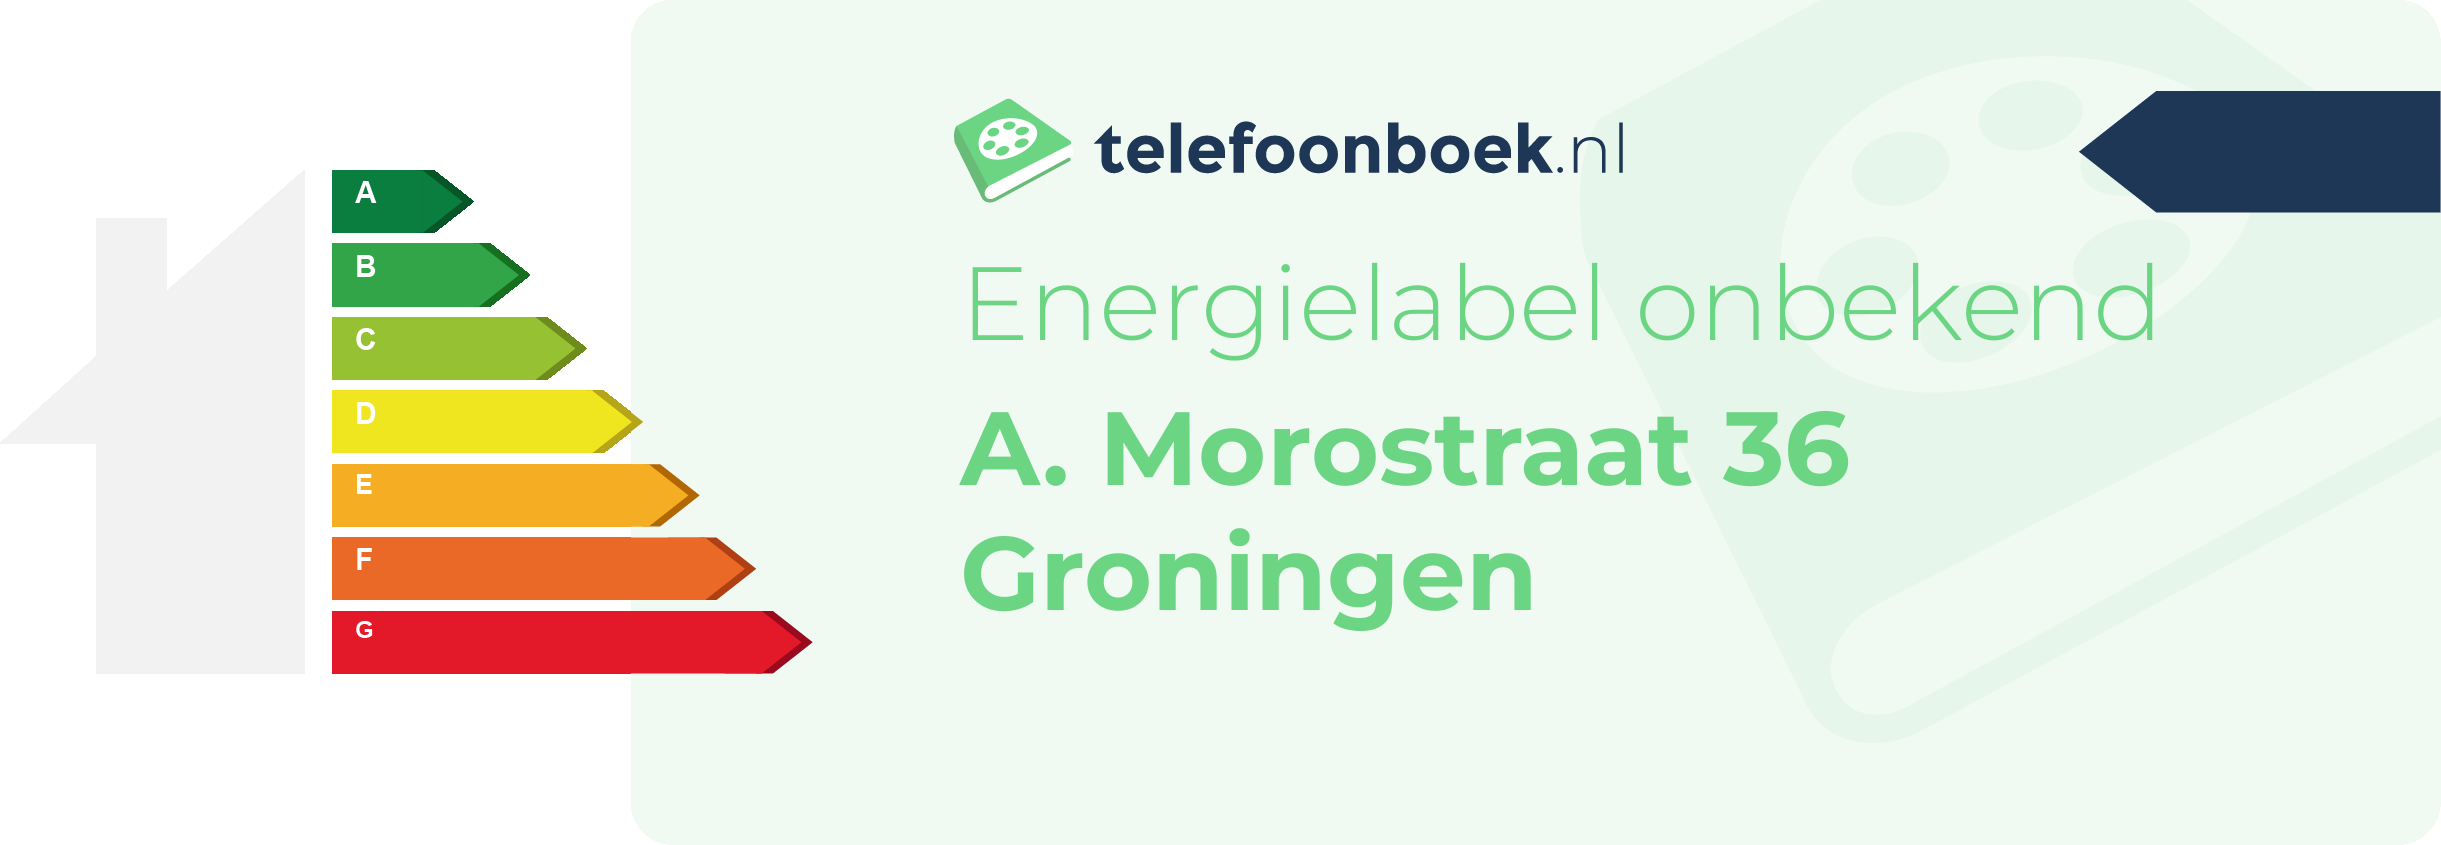 Energielabel A. Morostraat 36 Groningen